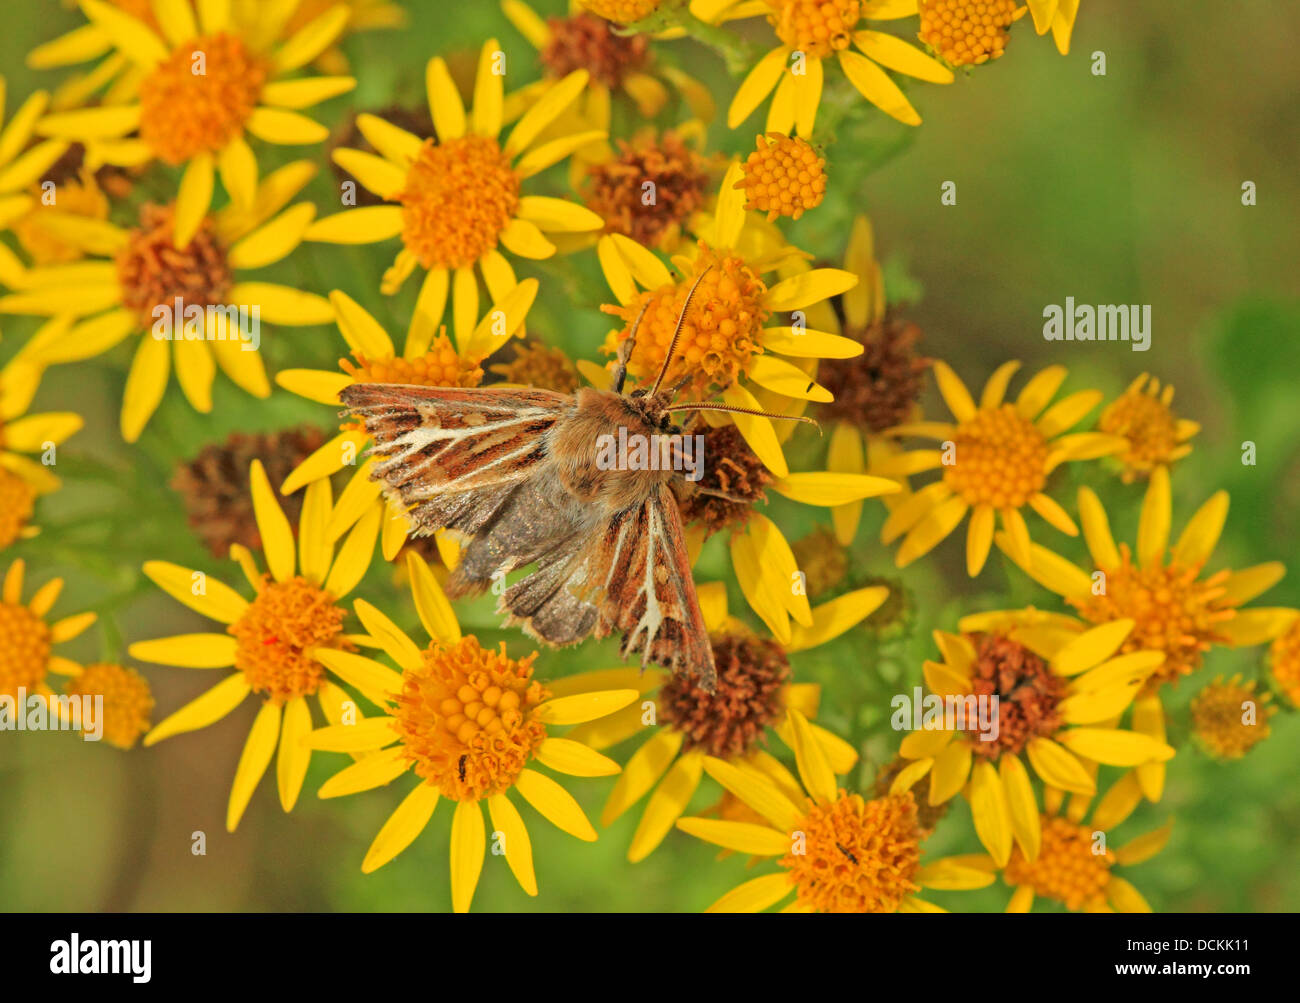 British Wild Flower Ragwort and Moth Stock Photo